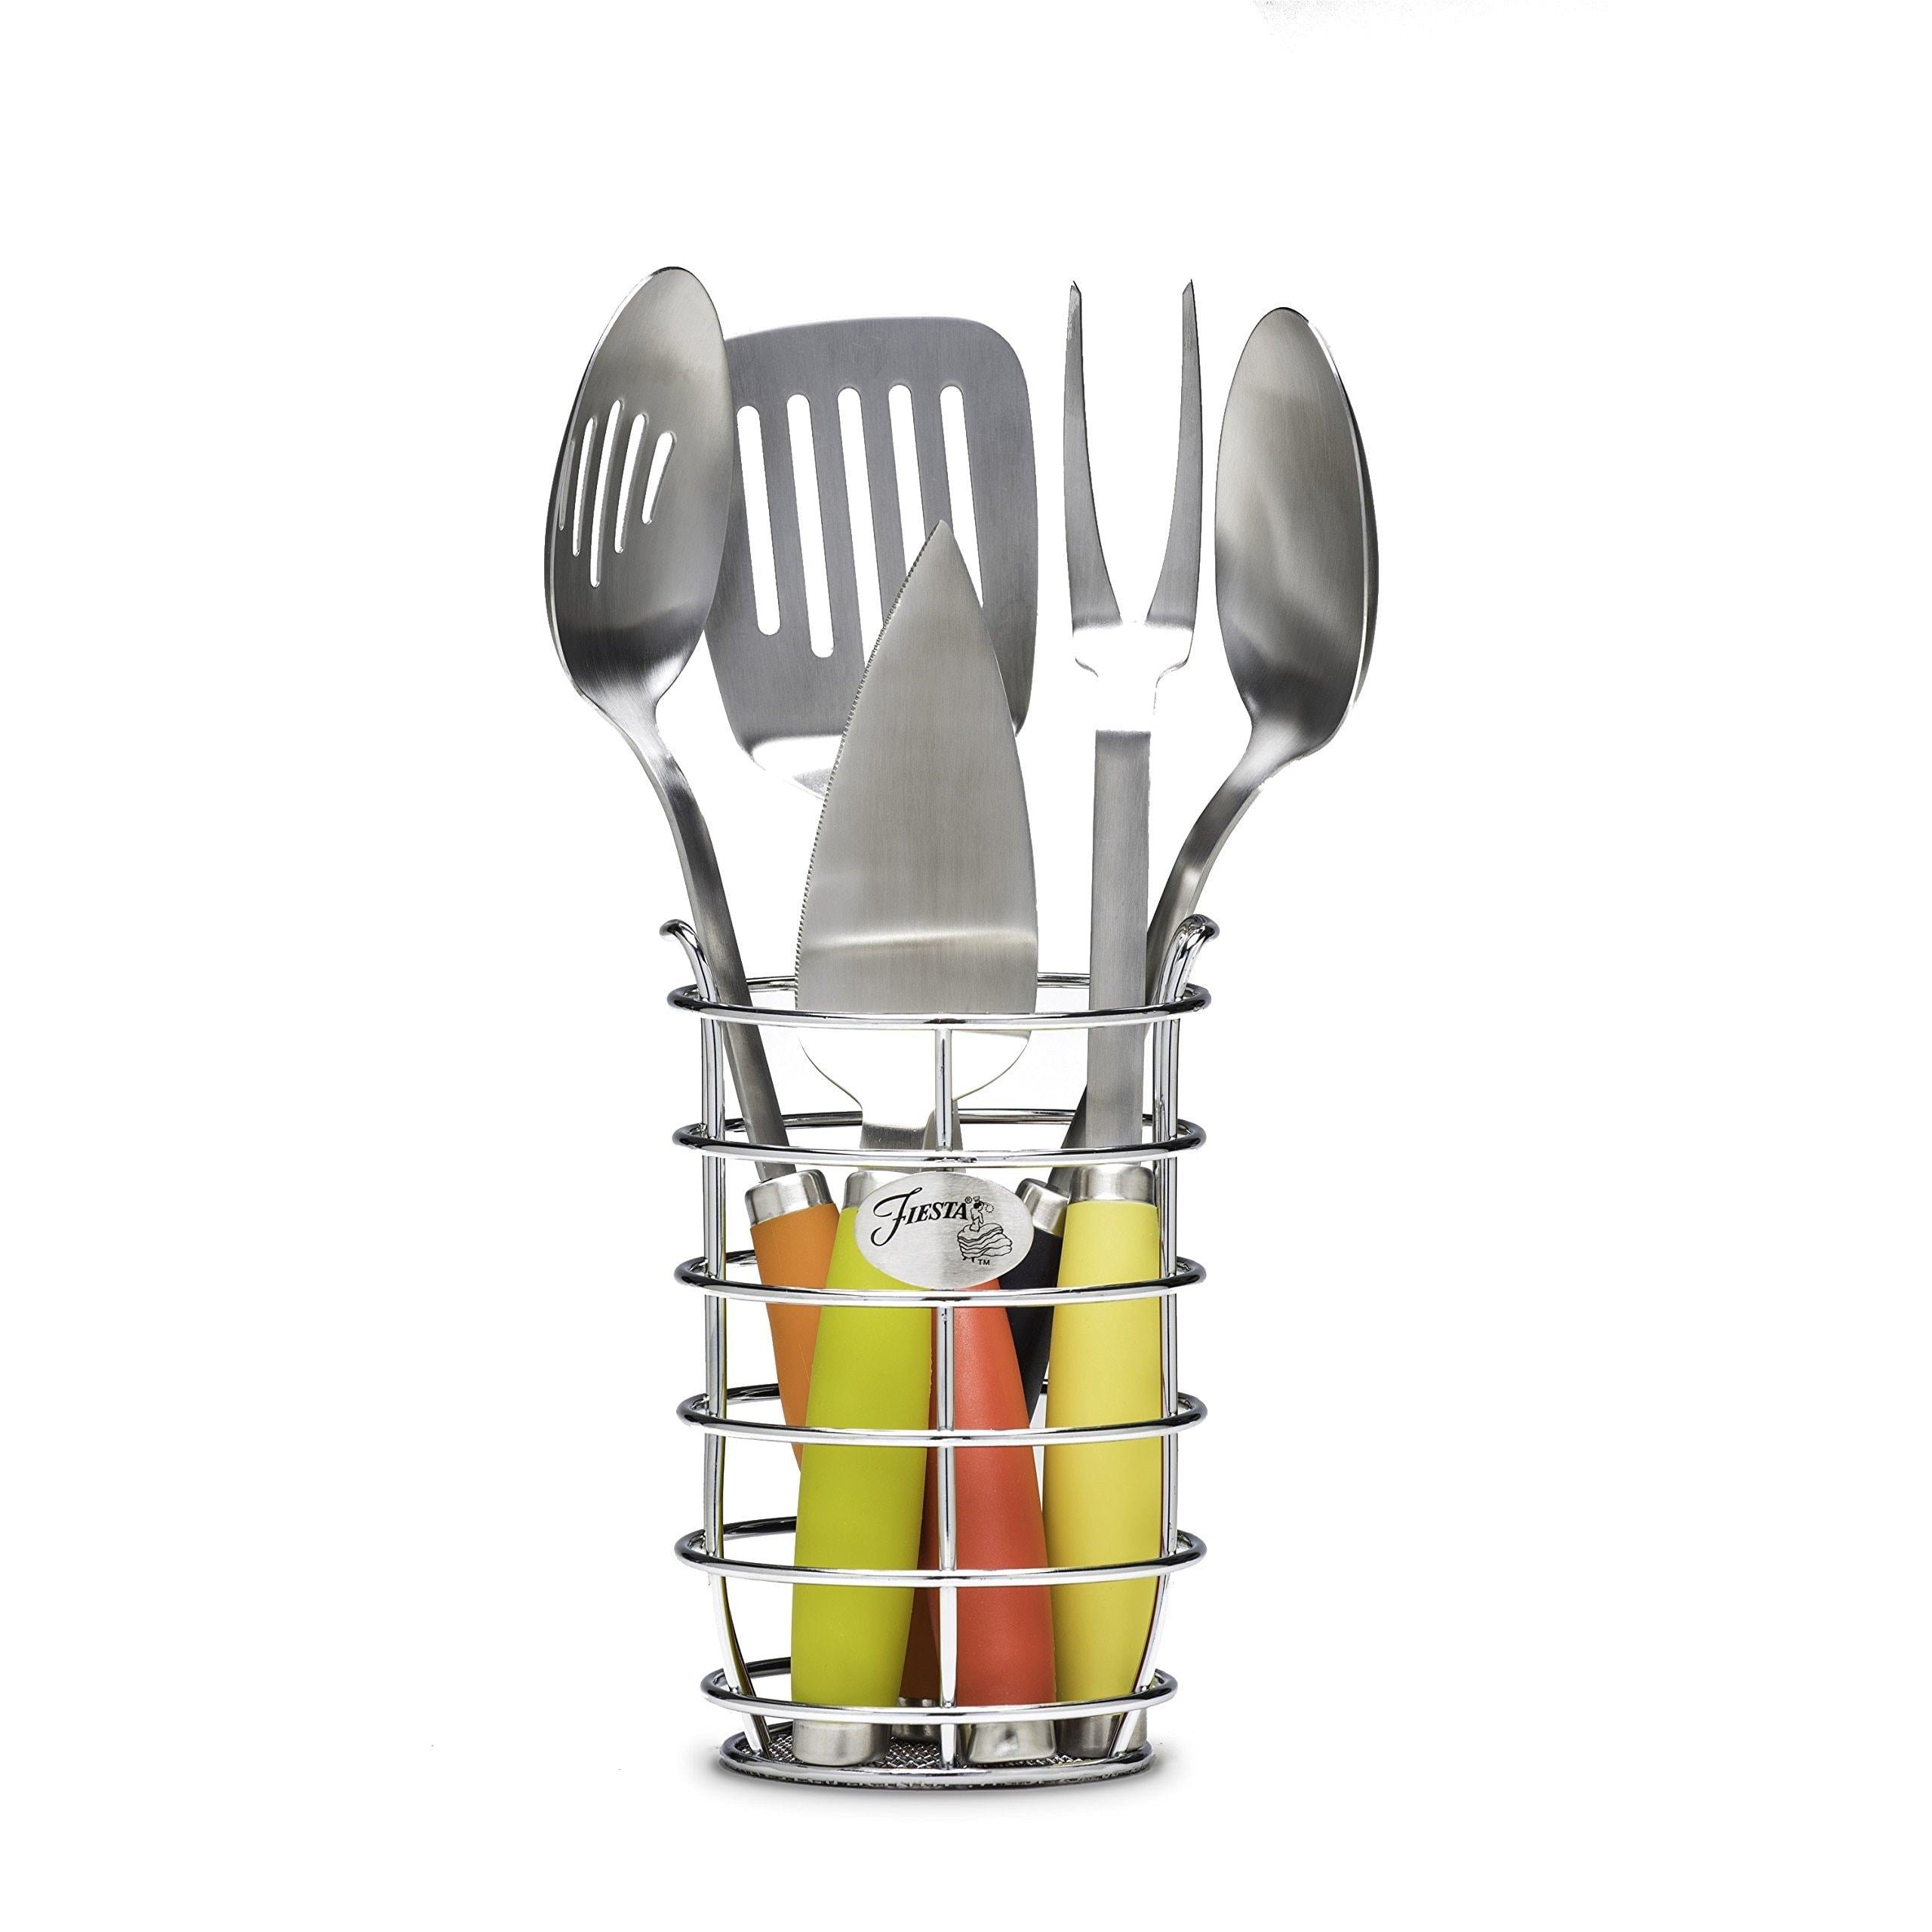 On amazon fiesta 5piece stainless steel utensil set with crock multi